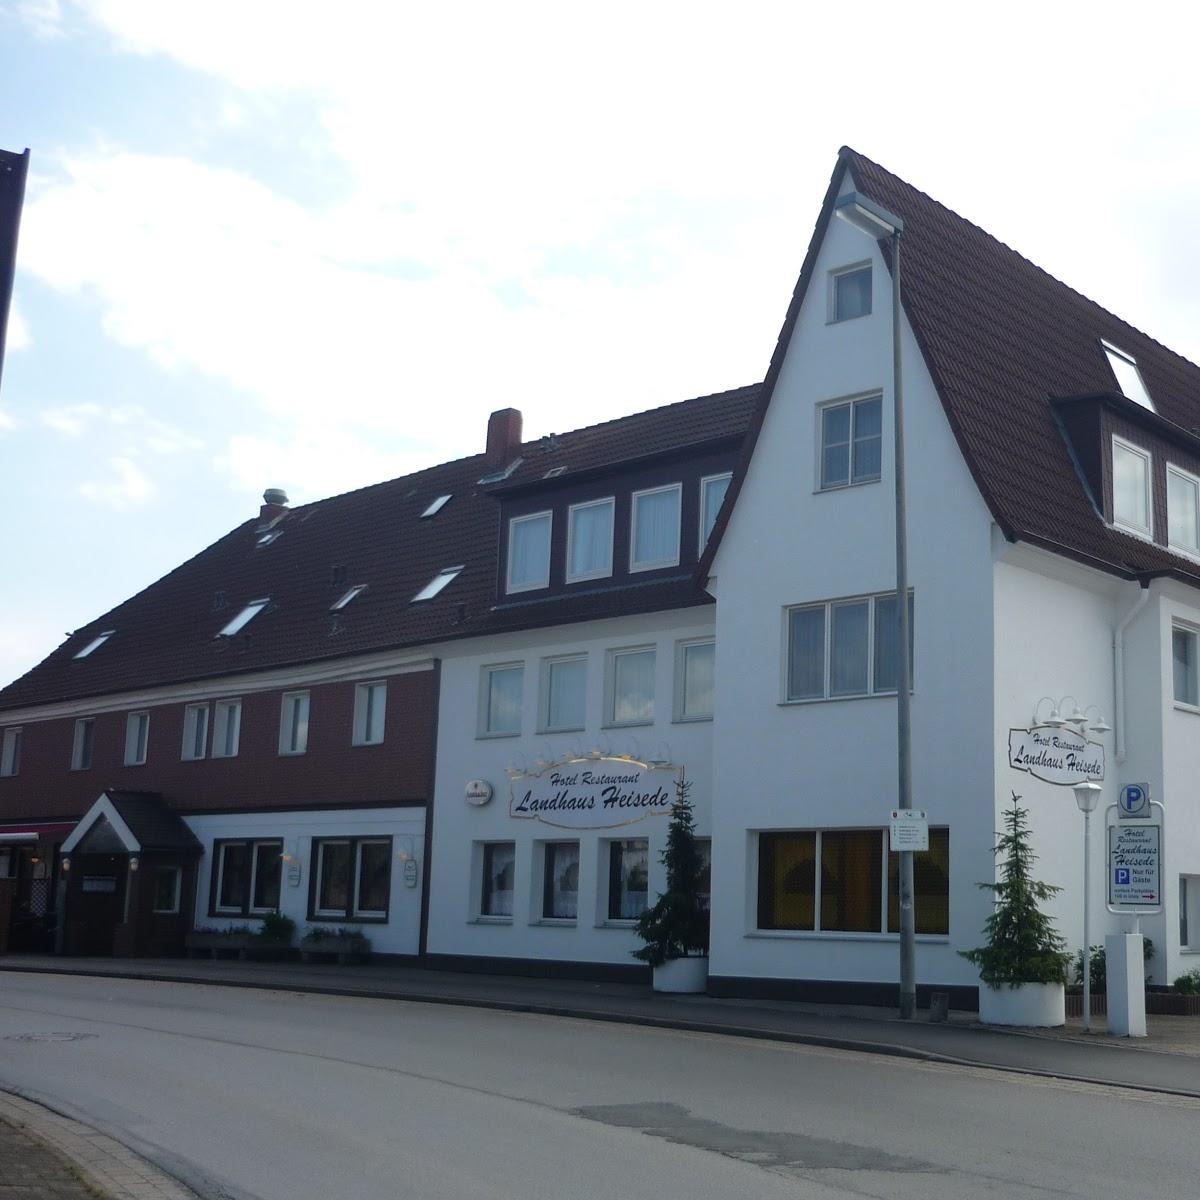 Restaurant "Landhaus Heisede" in Sarstedt